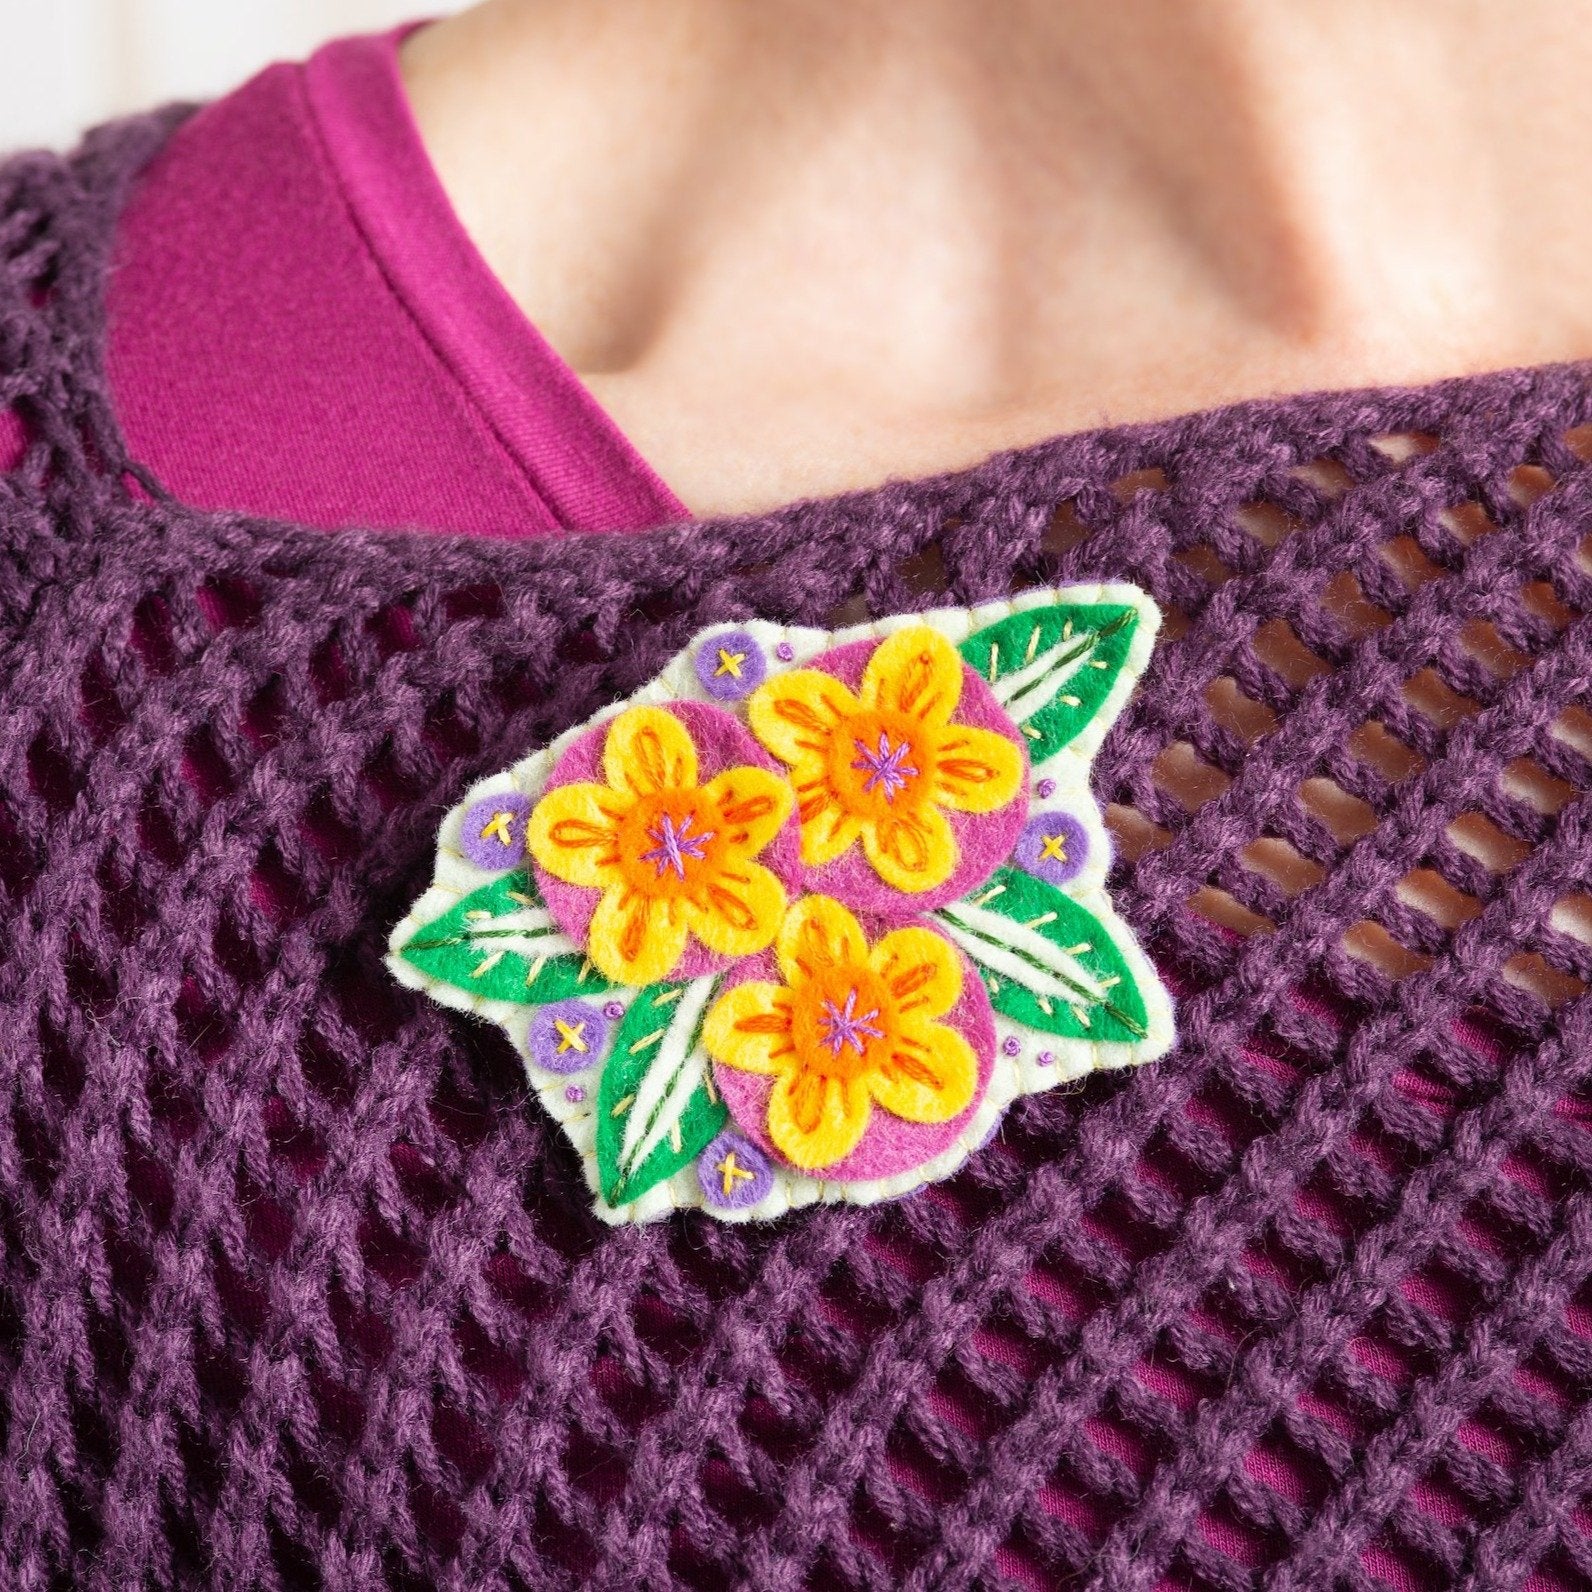 Penelope flower brooch worn on purple knitted jumper.